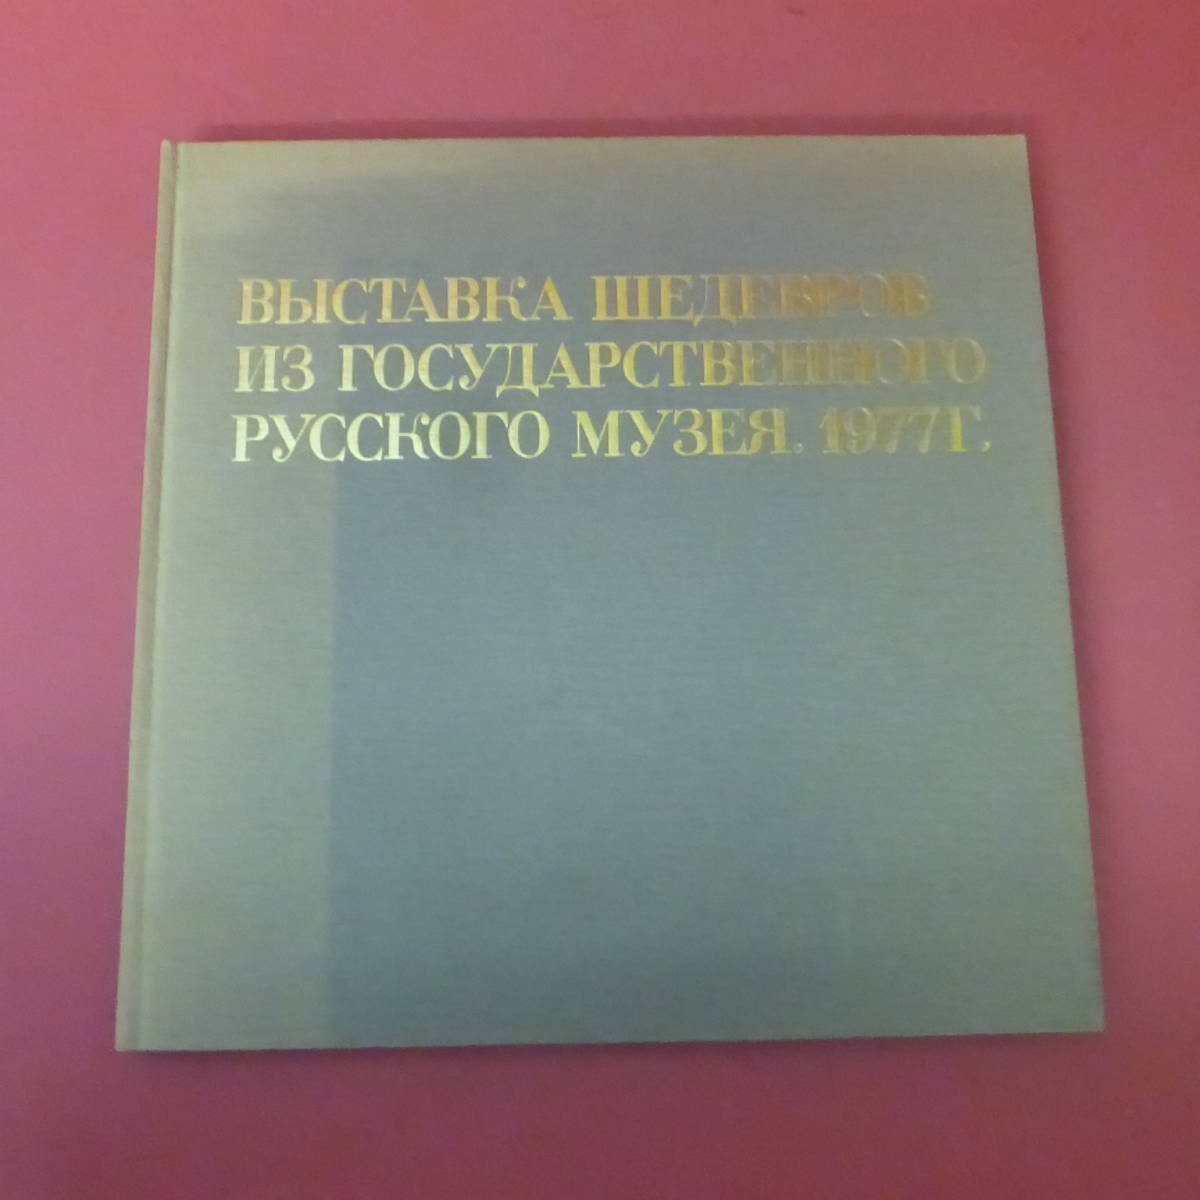 YN2-231012☆俄罗斯博物馆精品展, 以 1977 年《第九波》为中心, 绘画, 画集, 美术书, 收藏, 目录